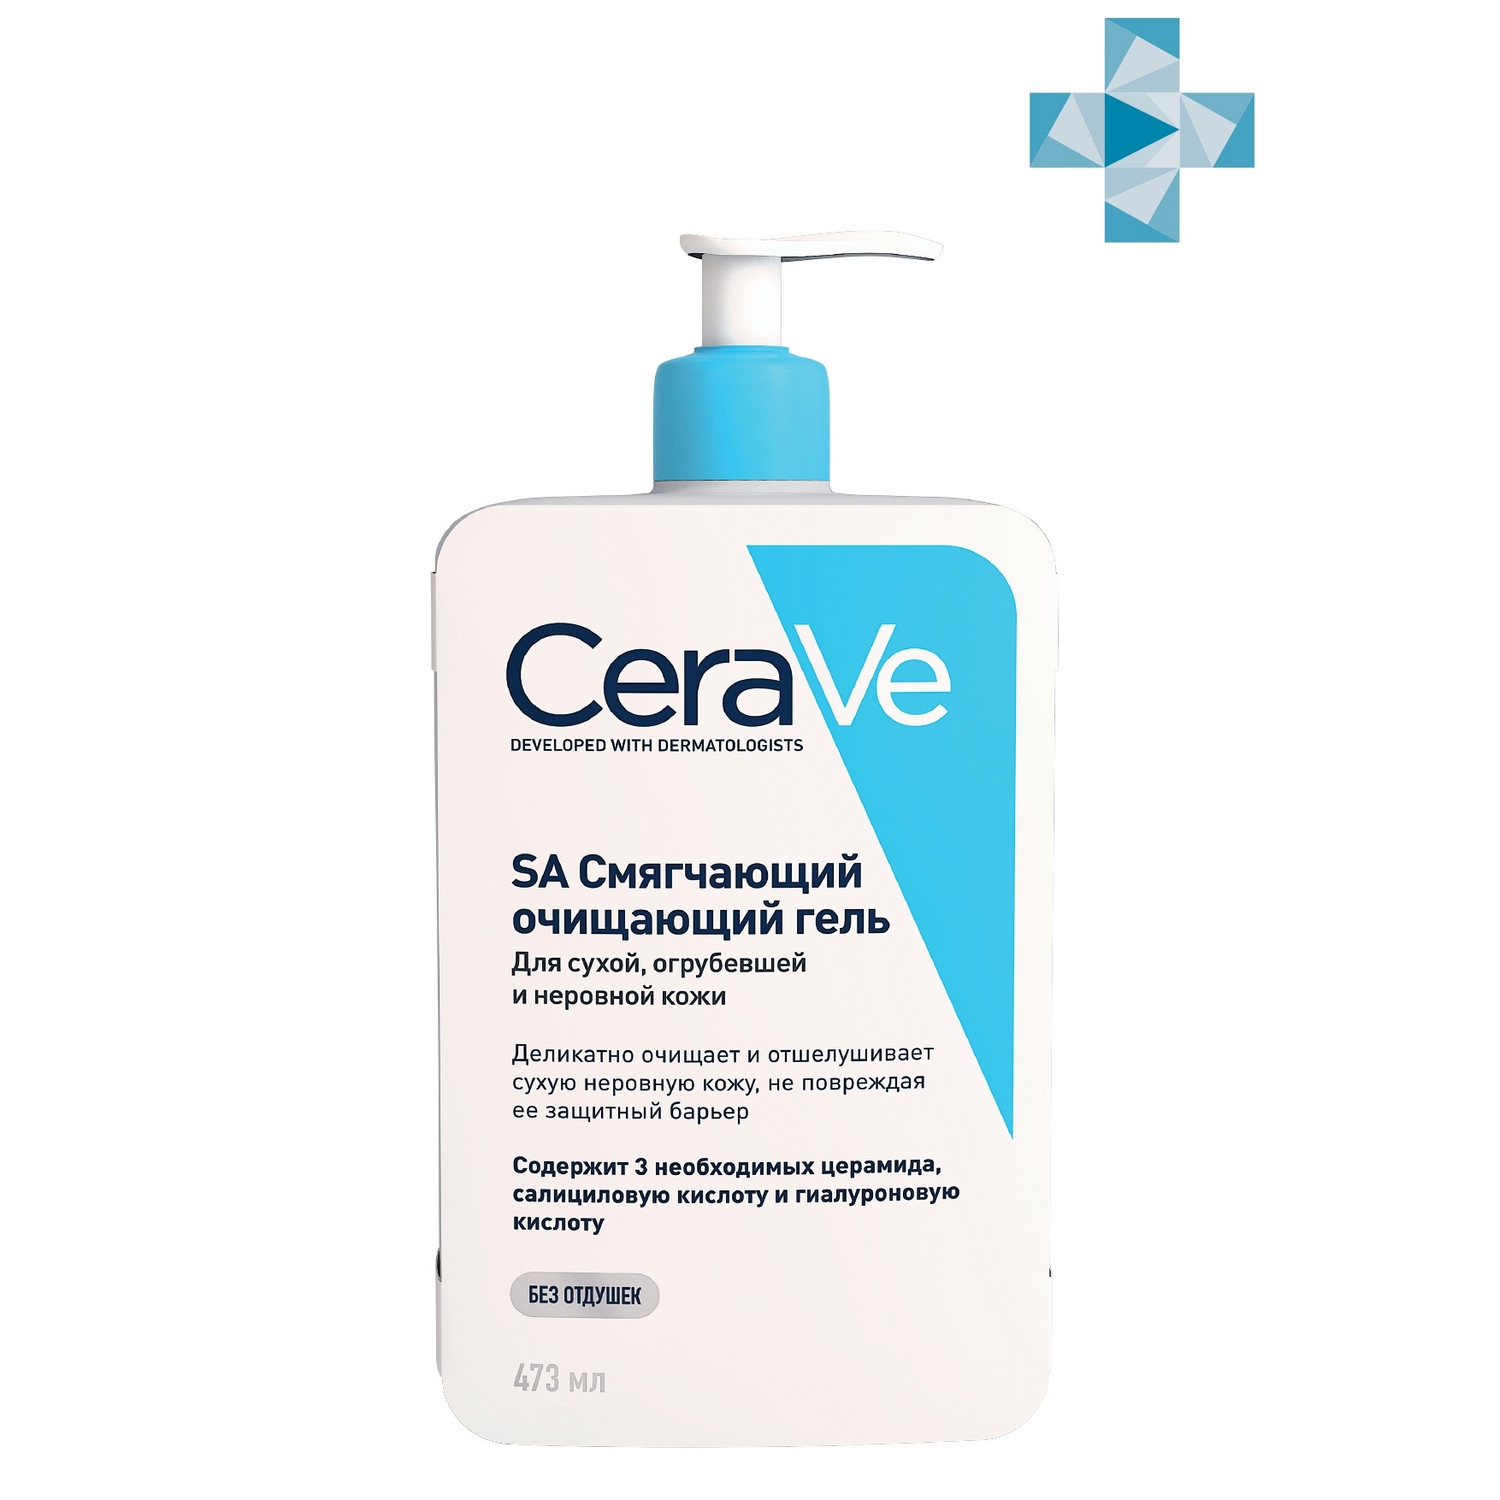 Купить CeraVe Смягчающий очищающий гель для сухой, огрубевшей и неровной кожи SA, 473 мл (CeraVe, Смягчение кожи), Франция